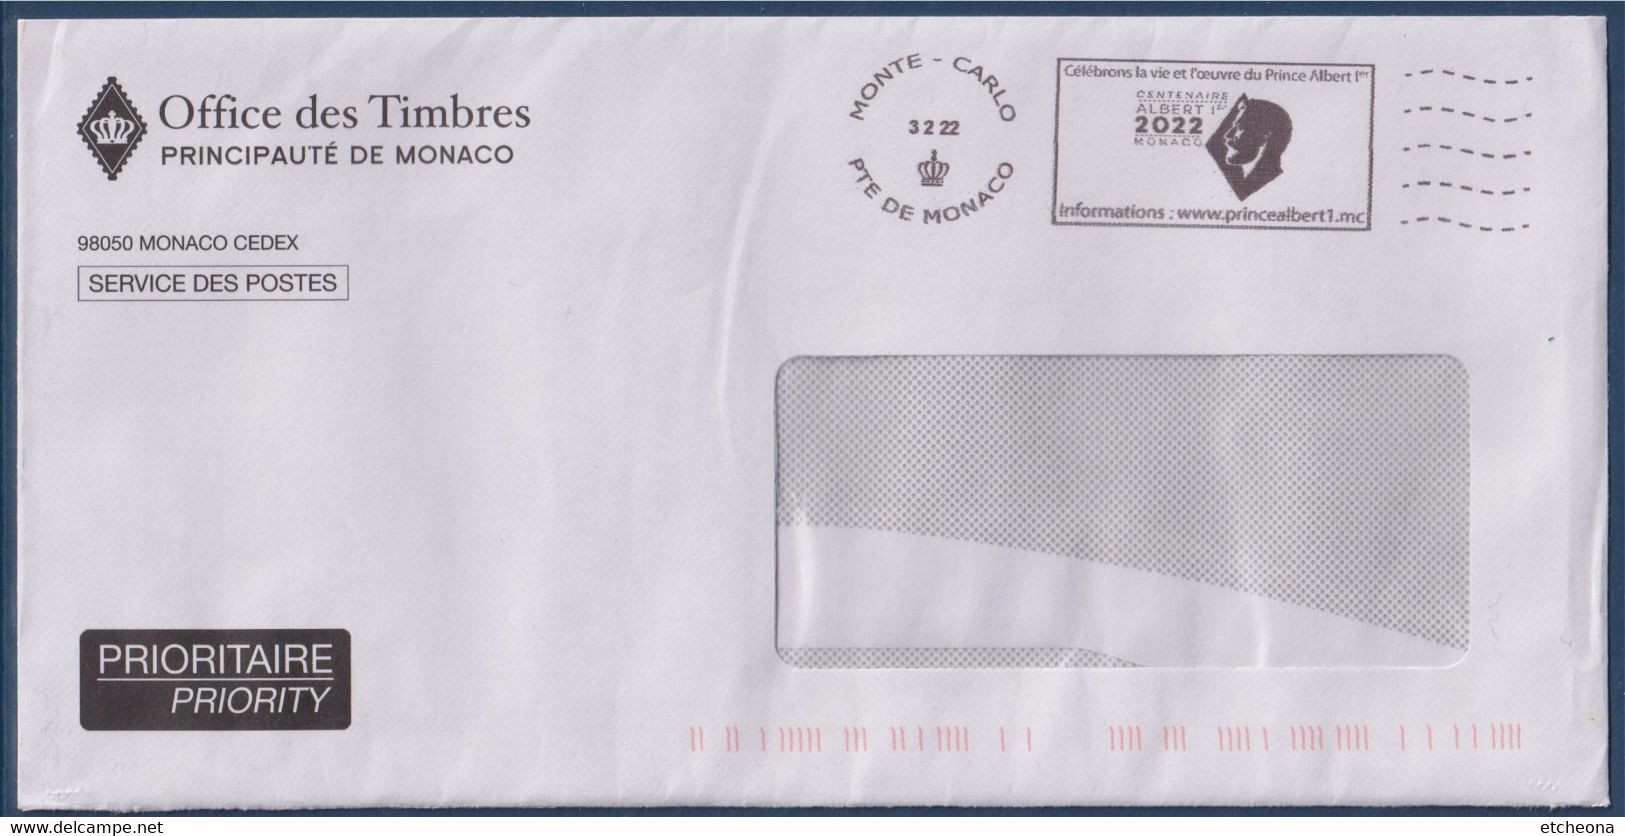 Flamme Célébrons La Vie Et L'oeuvre Du Prince Albert 1er, Centenaire Monaco, Monte Carlo 3 2 22 Enveloppe Fenêtre - Postmarks